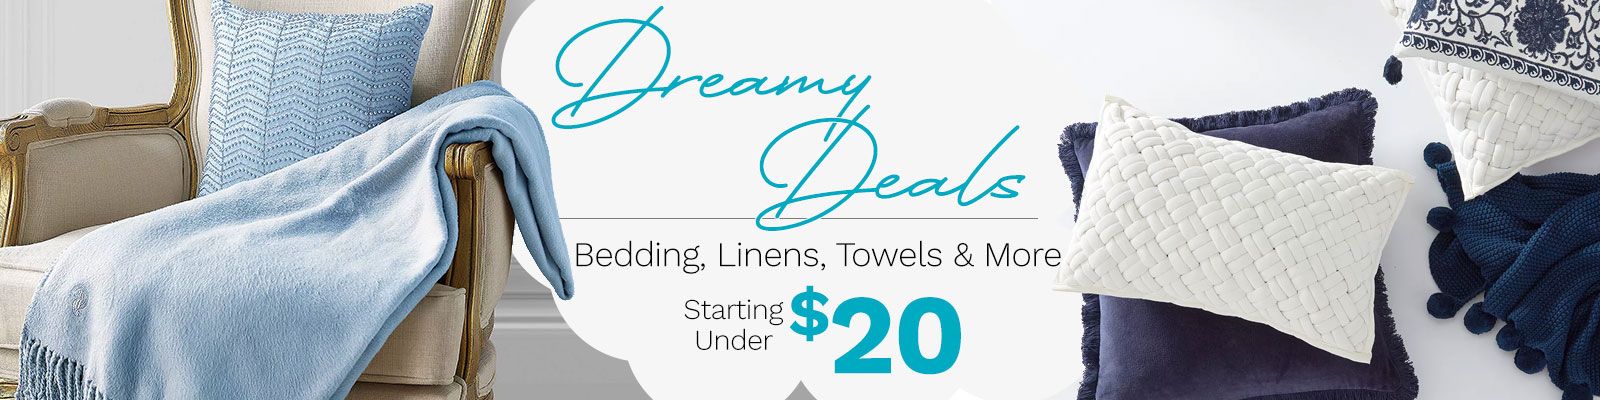 Dreamy Deals Starting Under $20